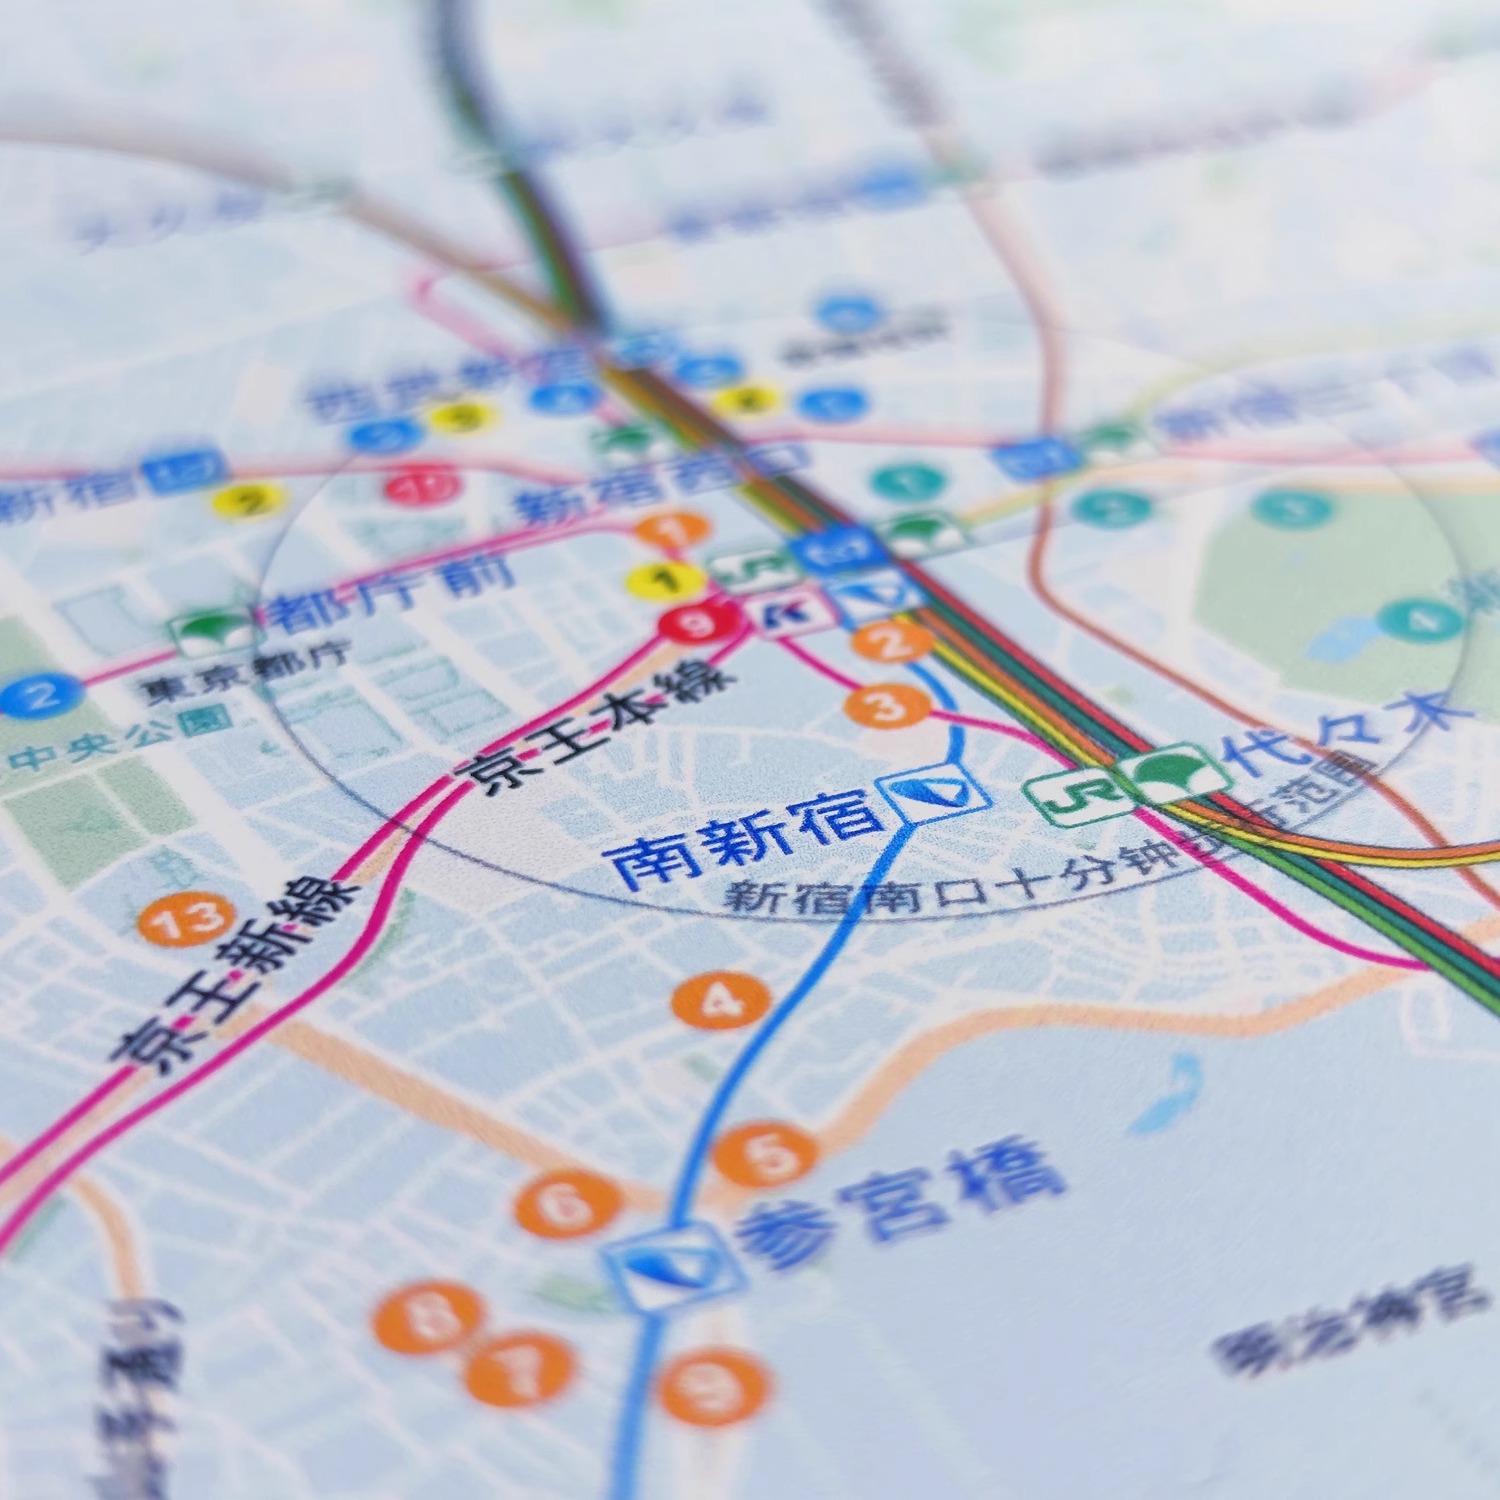 东京圣地巡礼指南图大尺寸日本旅游打卡取景地周边精美收藏地图 - 图0